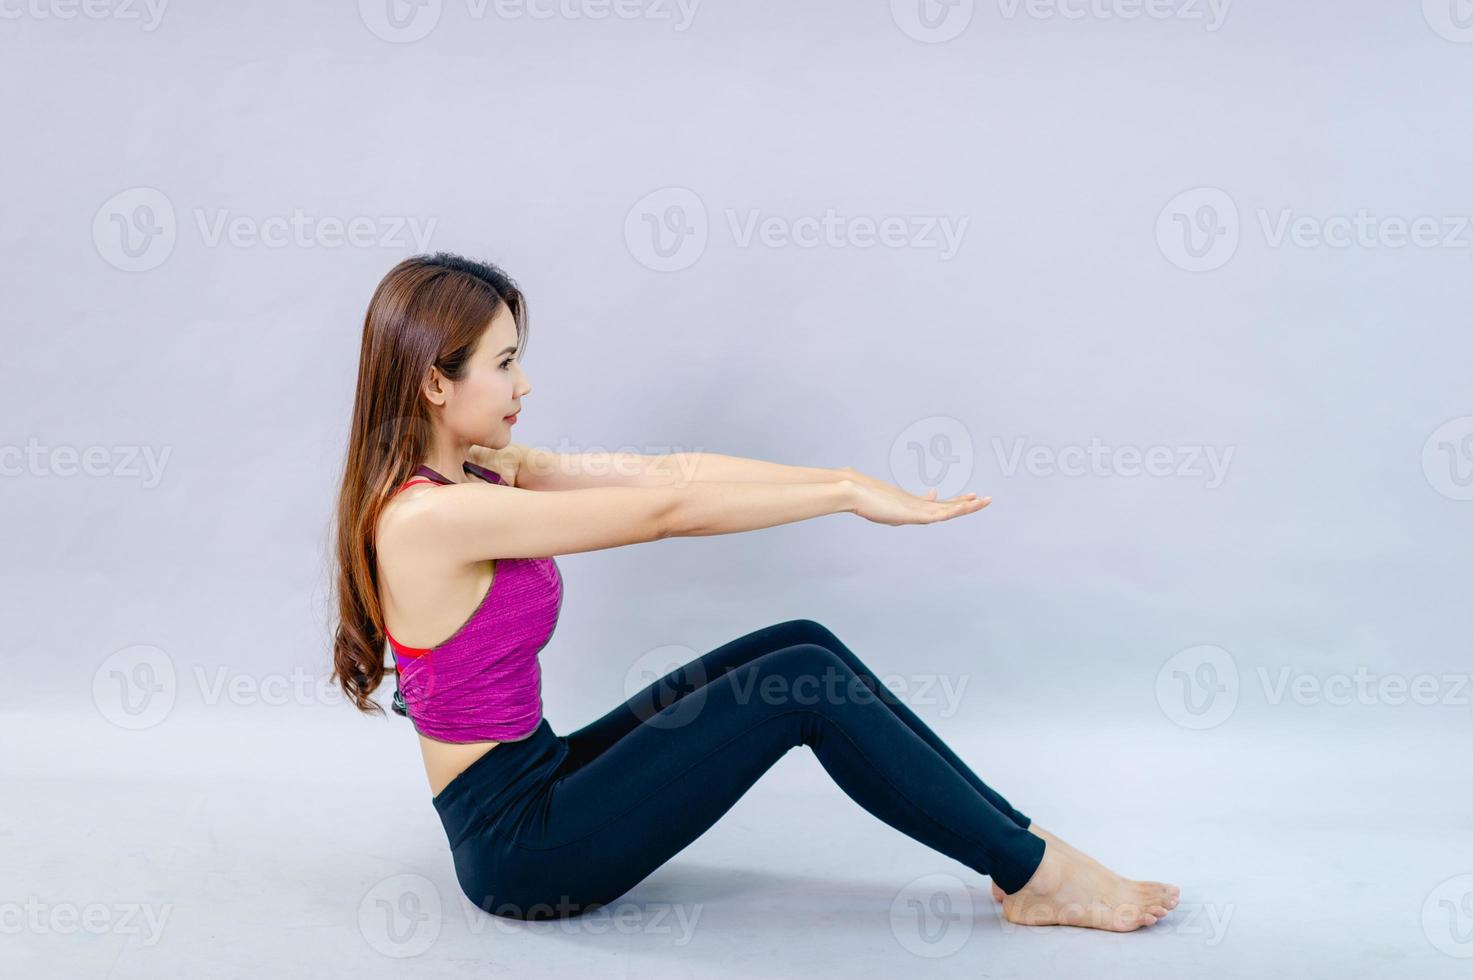 kvinnor gör yoga för hälsoträning i rummet koncept för hälsovård och bra form foto